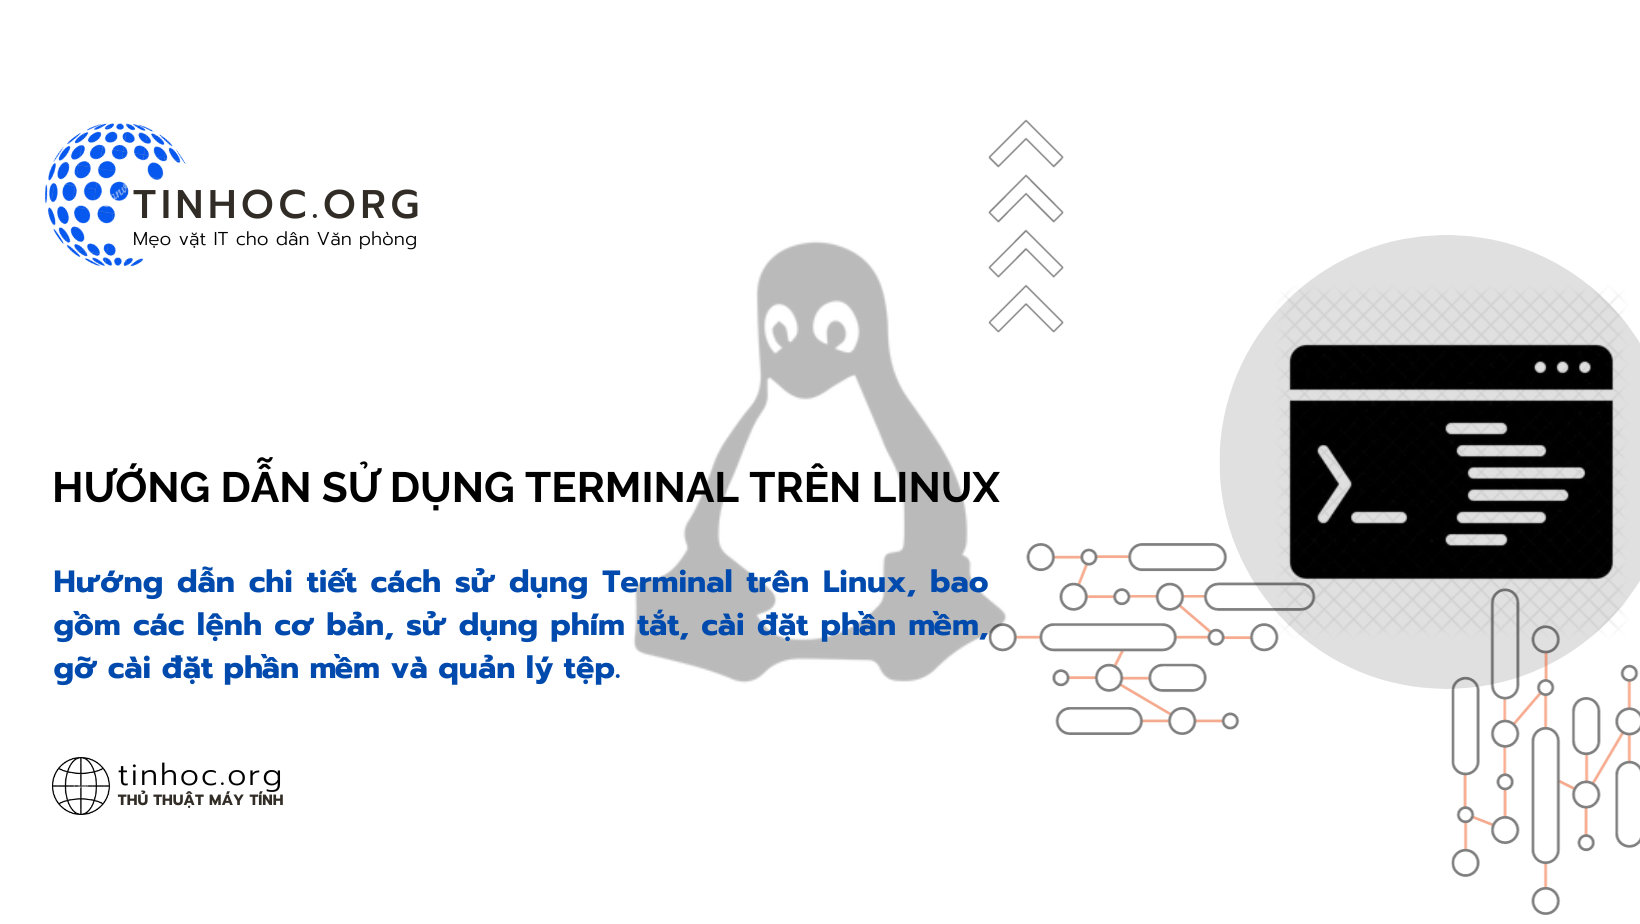 Hướng dẫn sử dụng Terminal trên Linux